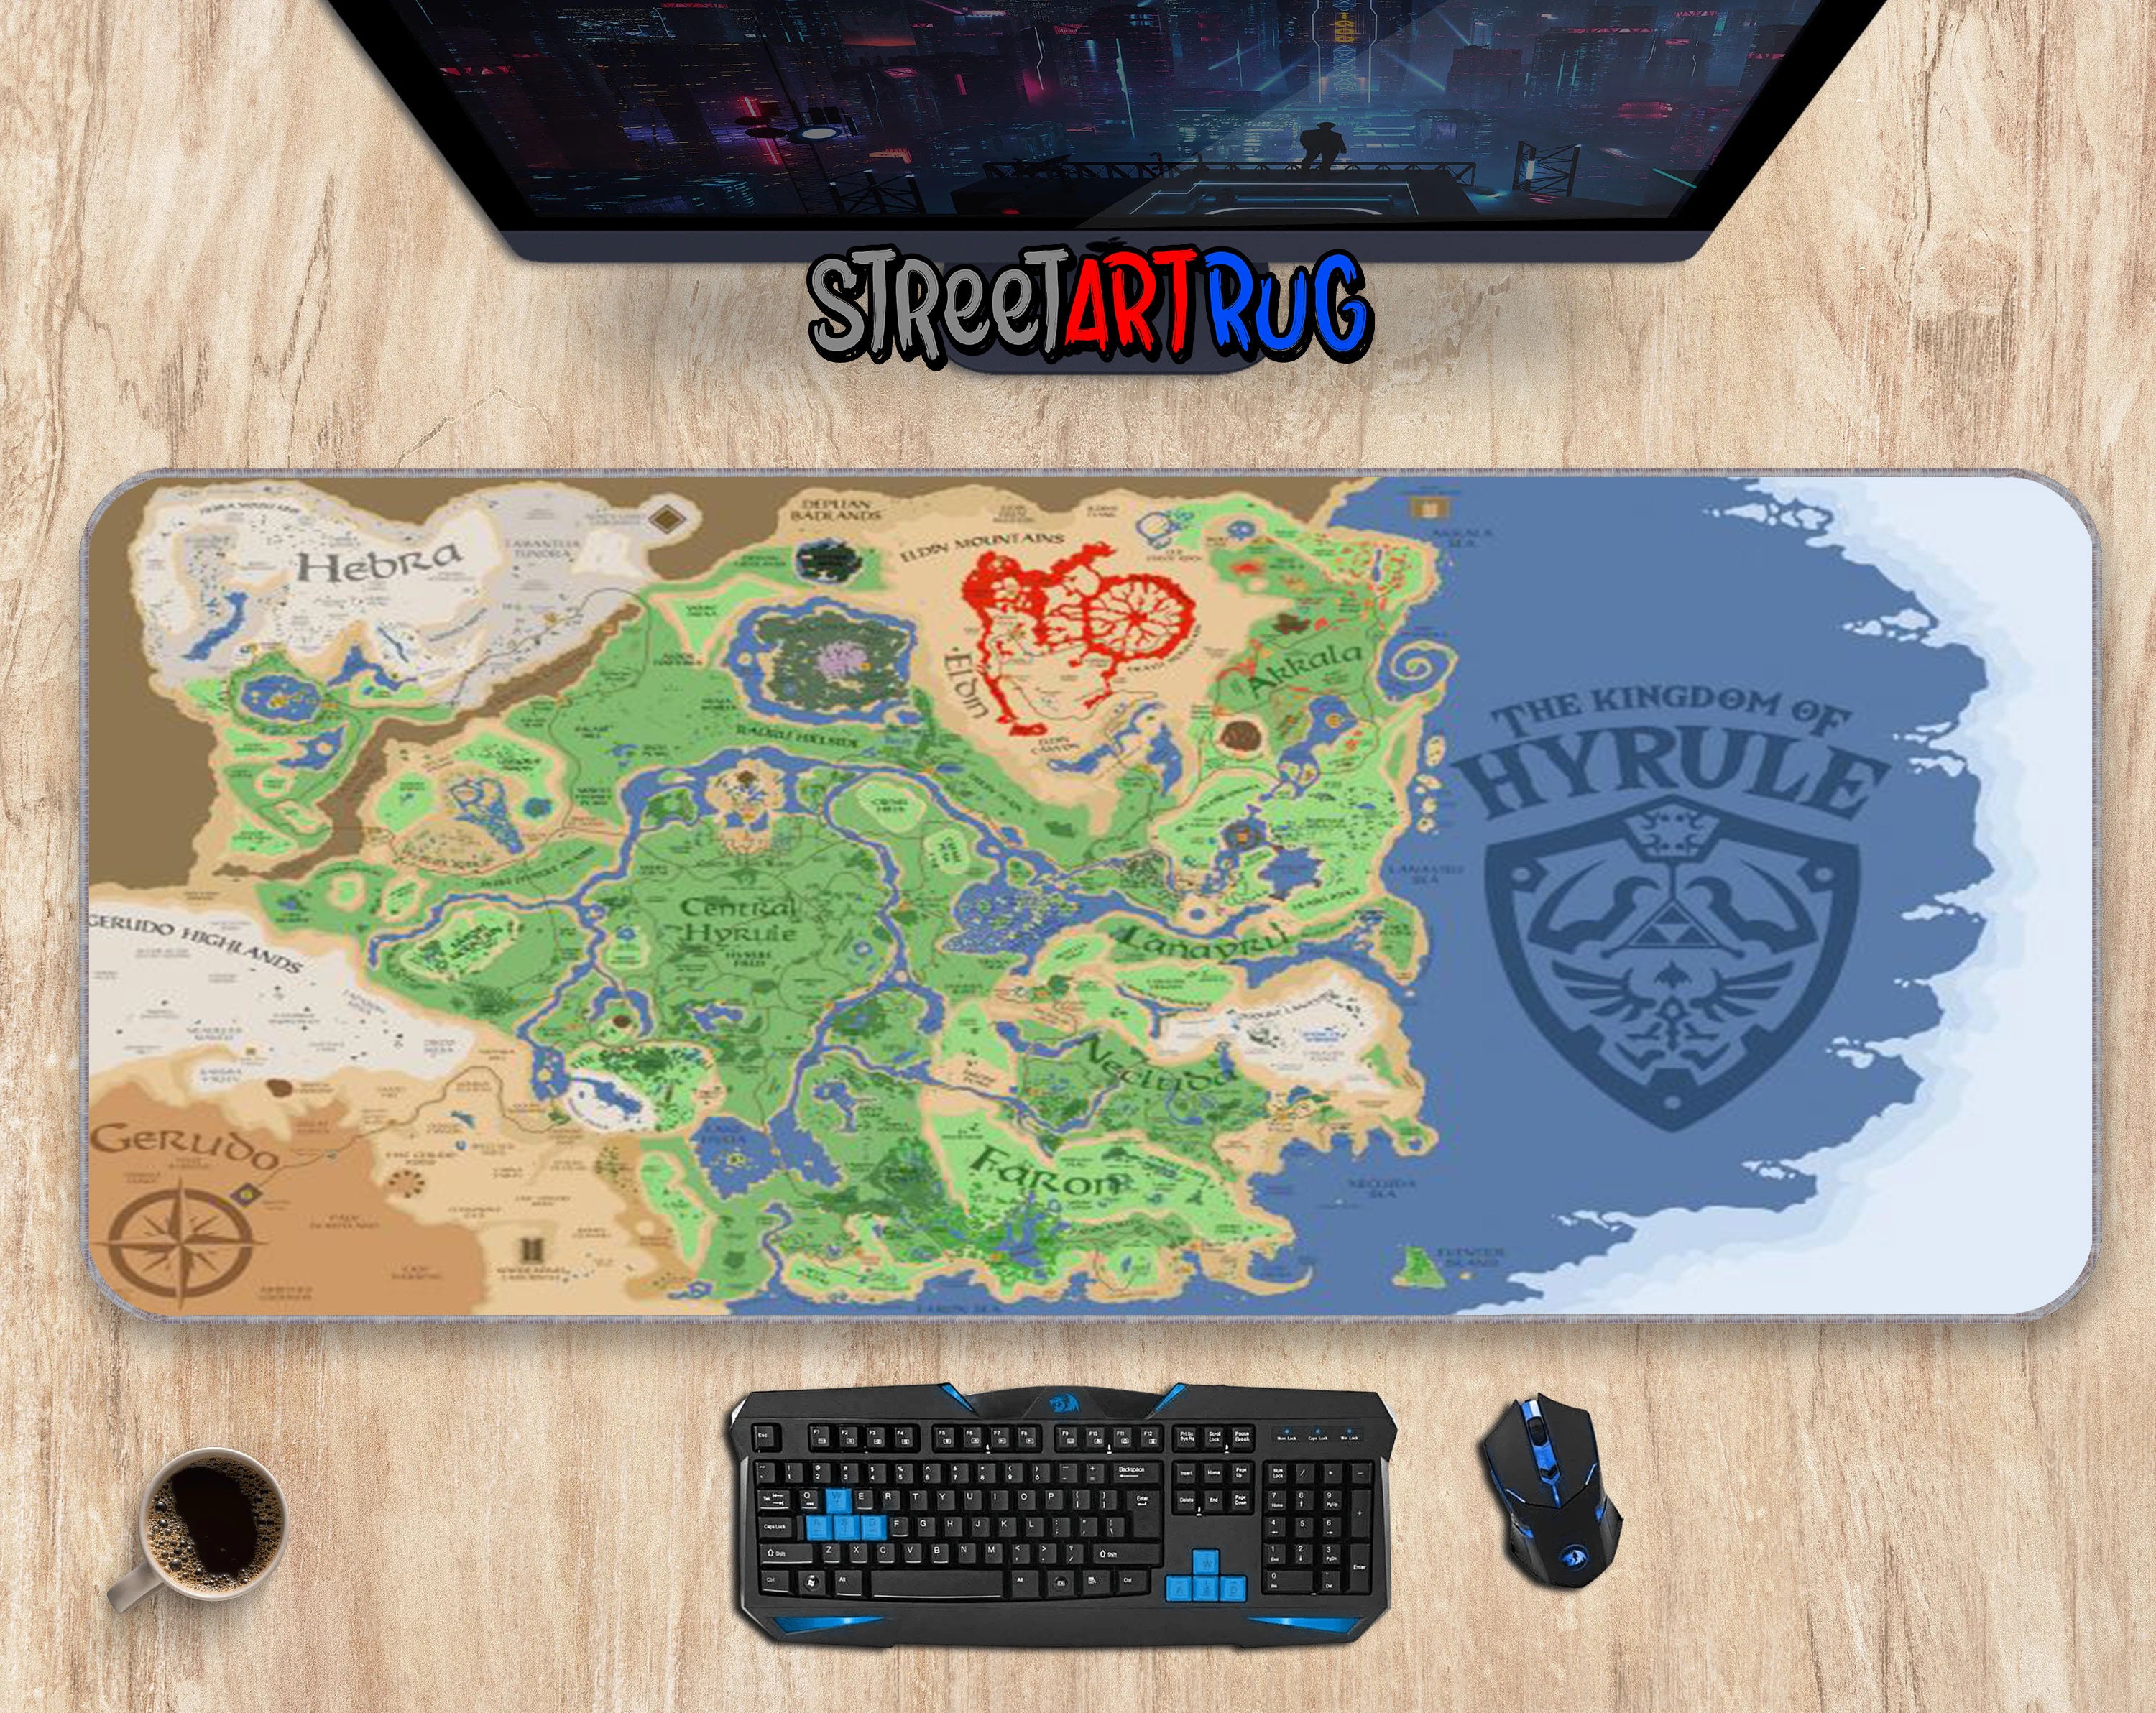 Tapis de souris World of Warcraft arc-en-ciel pour ordinateur